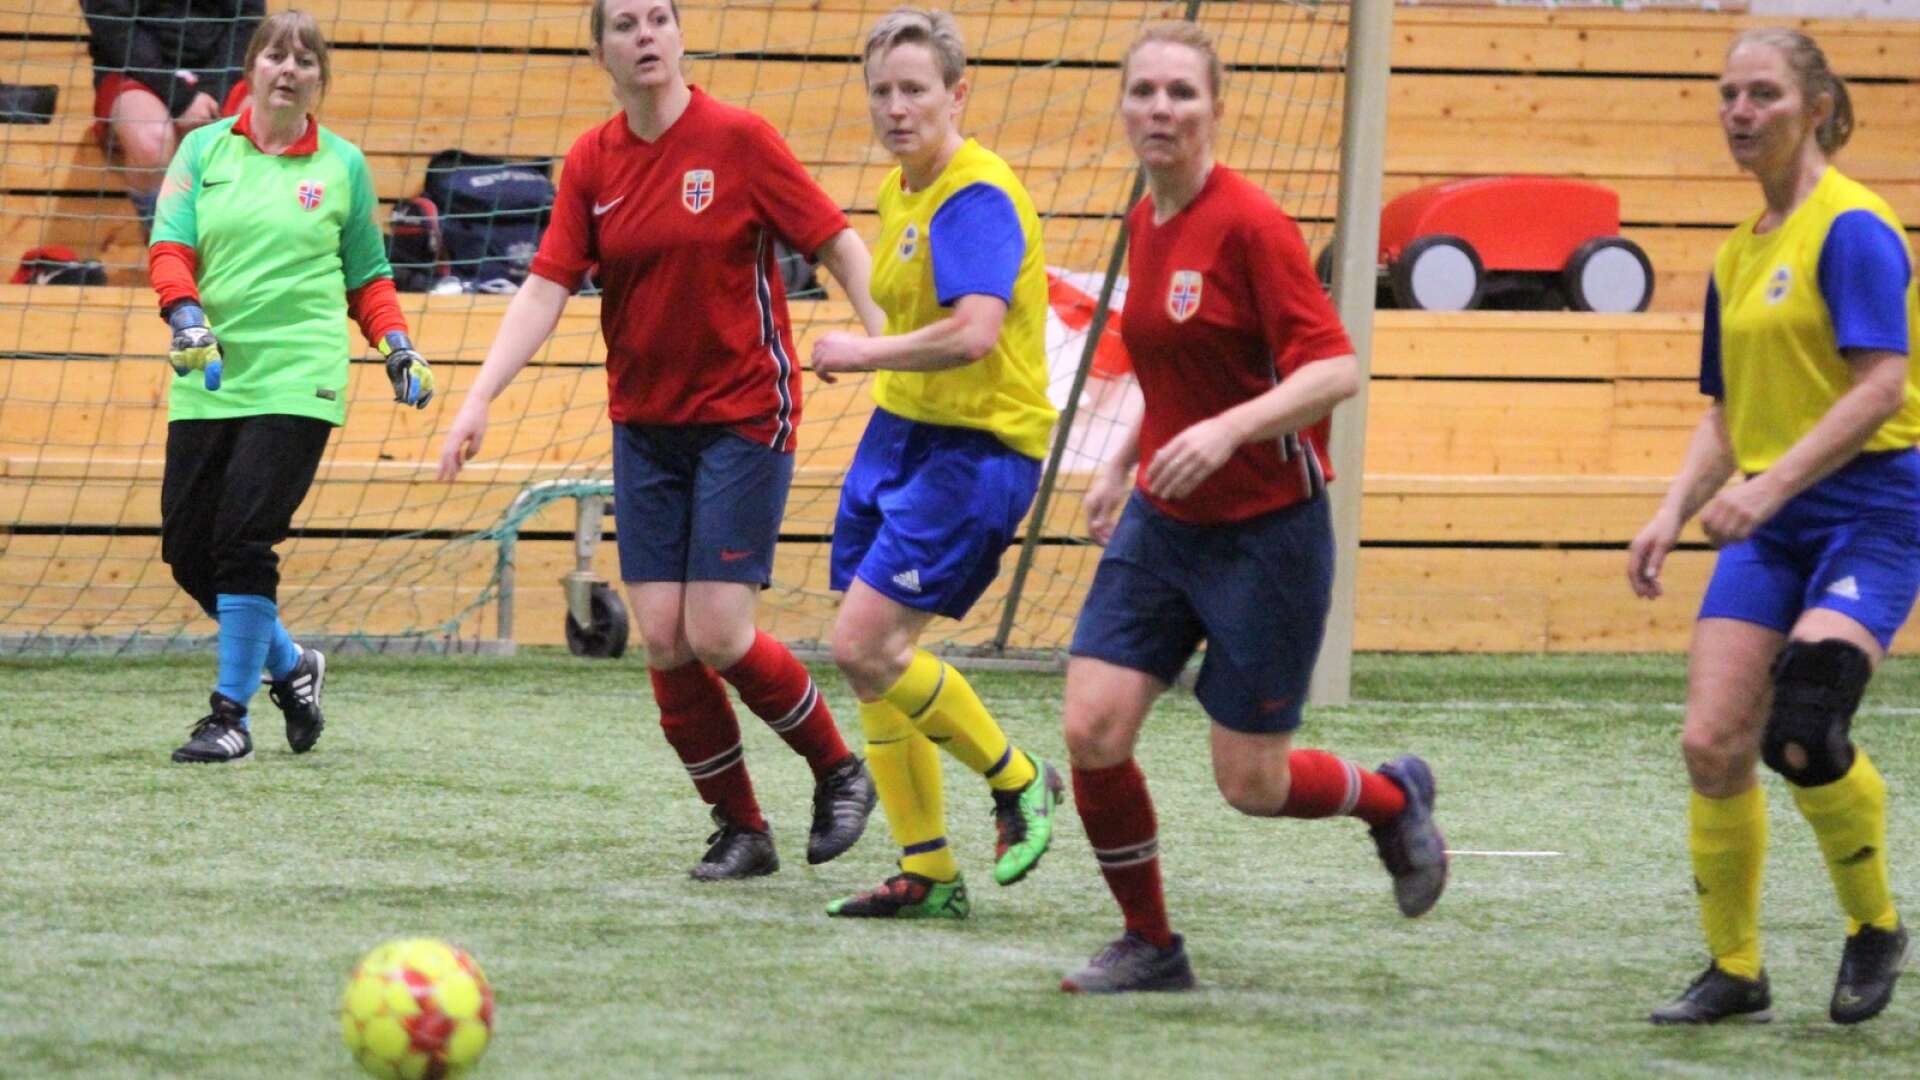 Sveriges gåfotbollslandslag för veteraner spelade sina första historiska landskamper på hemmaplan i Vara. +50-laget inledde mot Norge med bland annat Malin Stålklint från Mariestad.